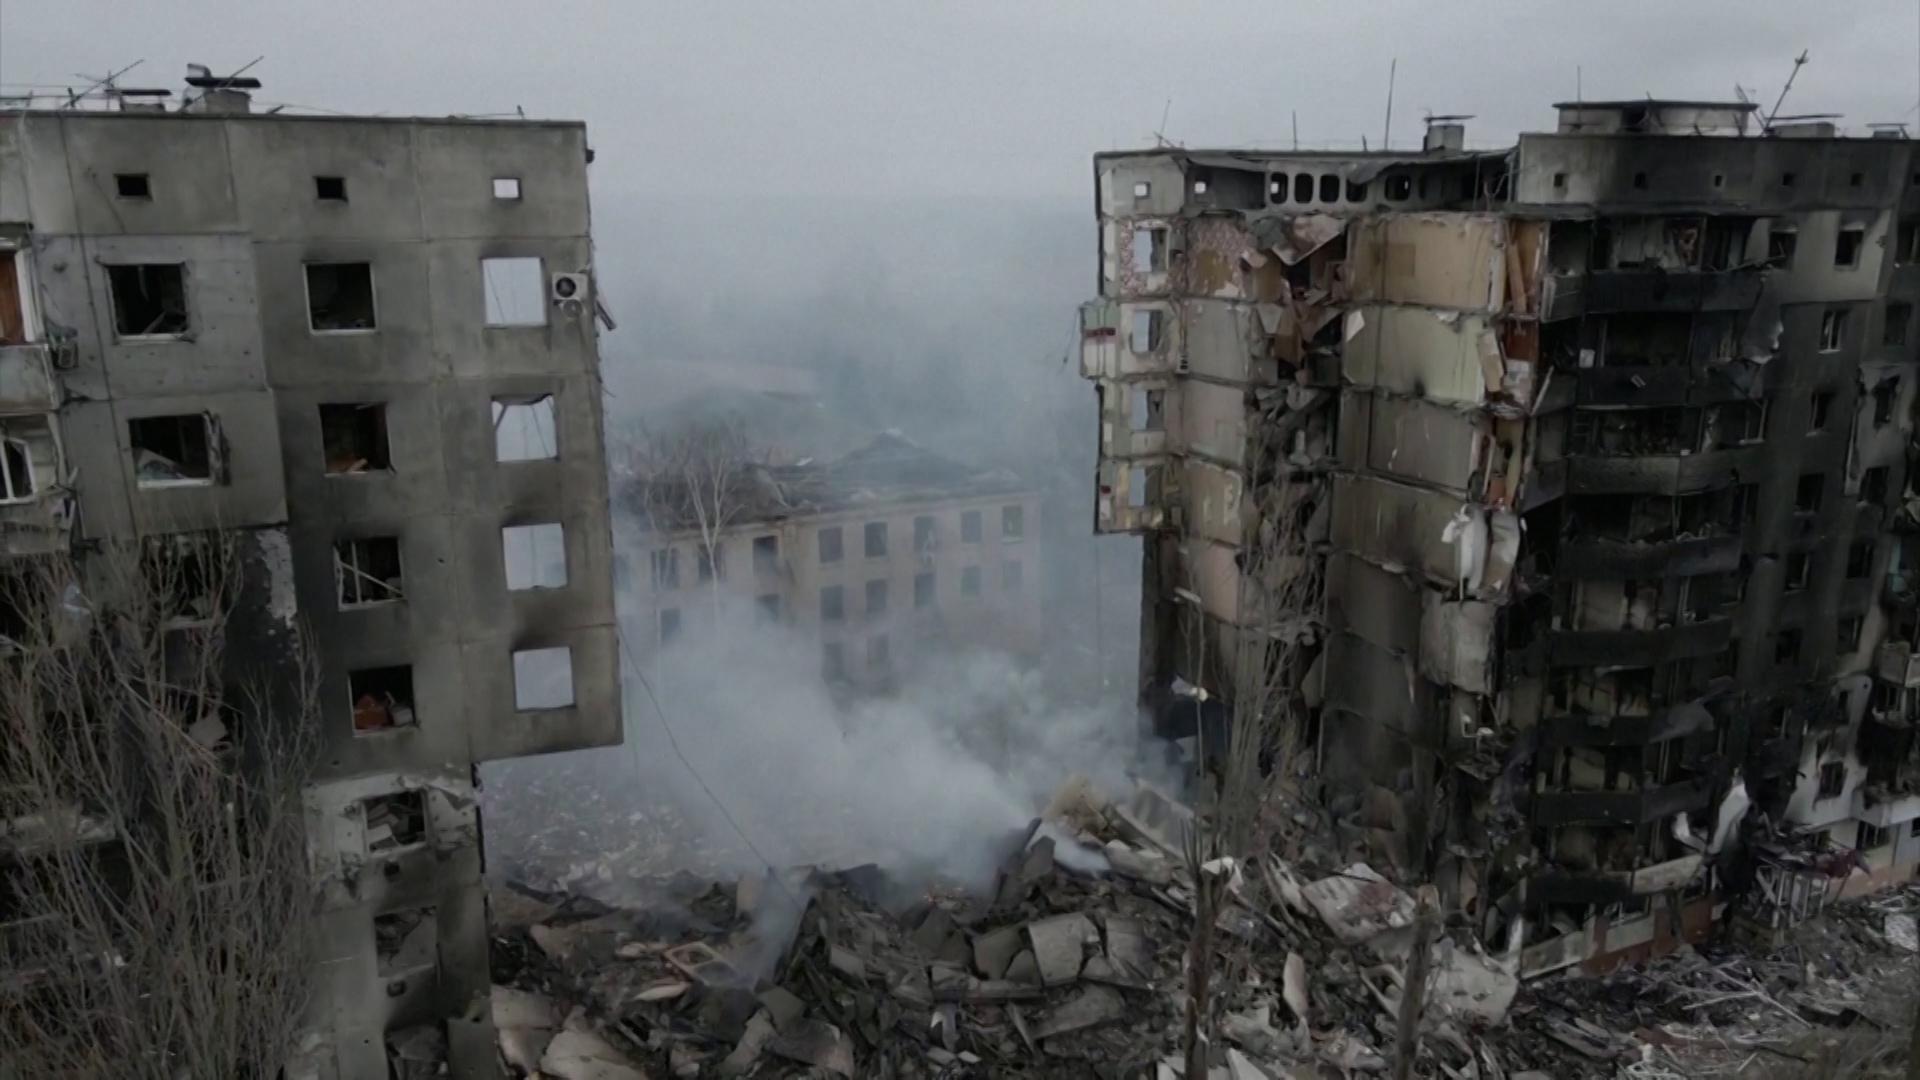 Восьмой день в фотографиях: Полные разрушения после попадания ракеты в многоквартирный дом, дети, рожденные в бомбоубежищах